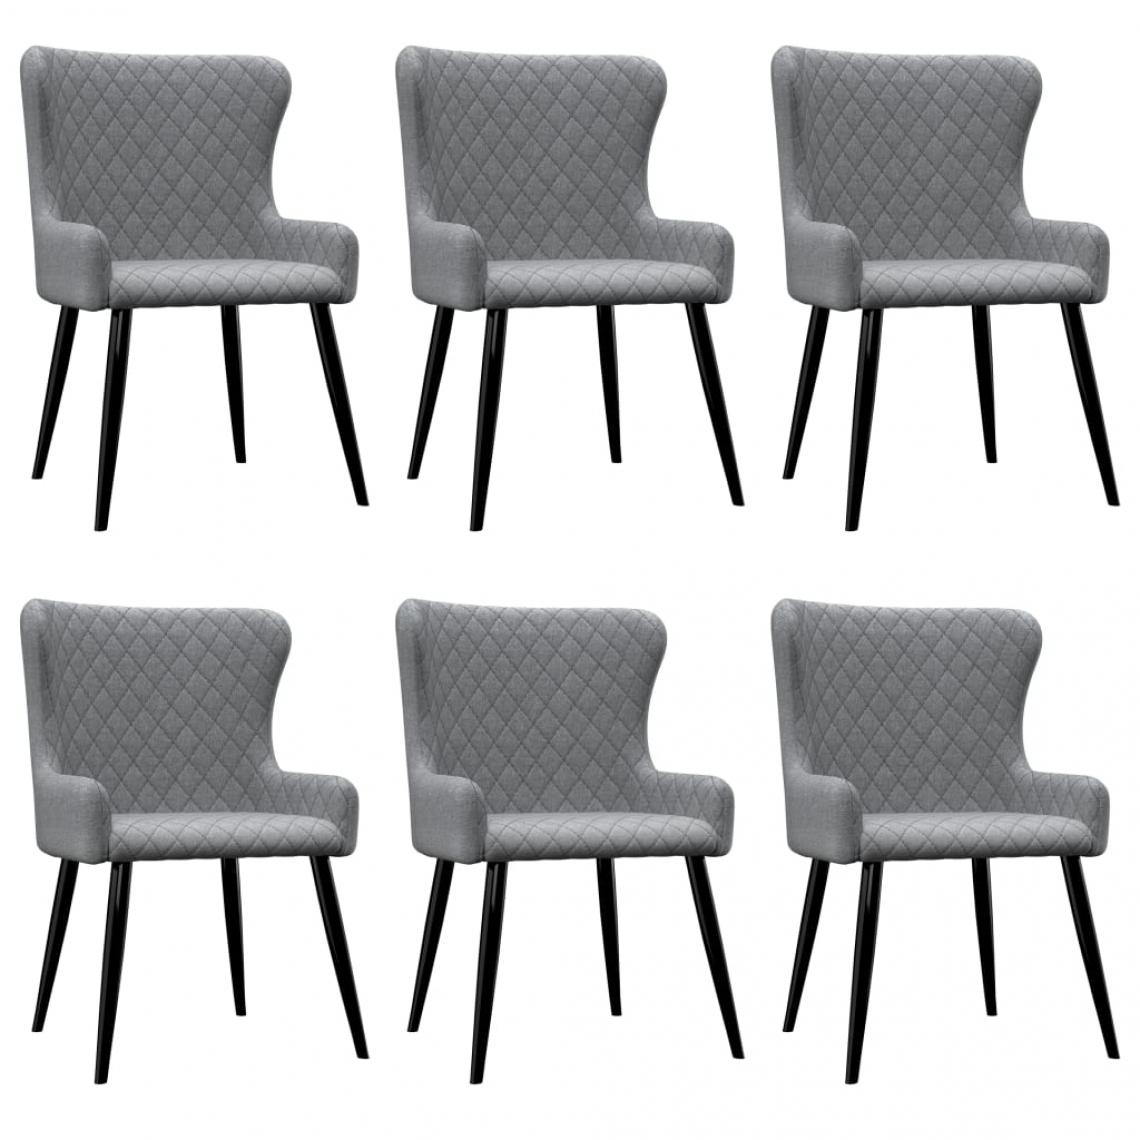 Decoshop26 - Lot de 6 chaises de salle à manger cuisine style moderne et chic en tissu gris clair CDS022422 - Chaises